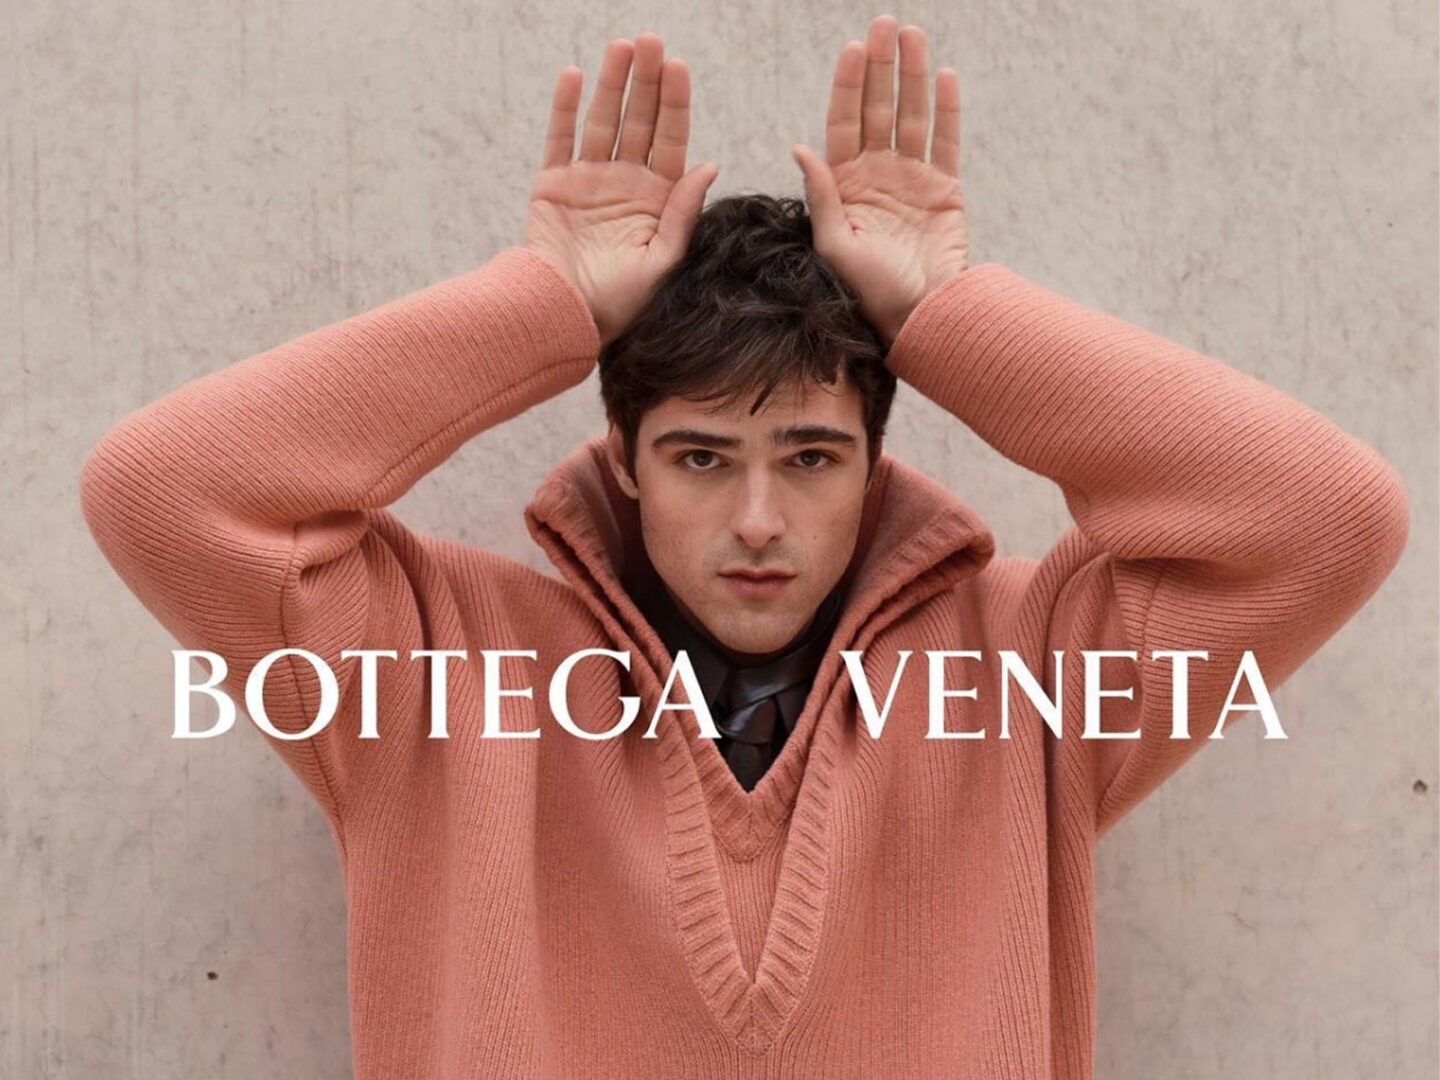 Jacob Elordi es el nuevo embajador de Bottega Veneta